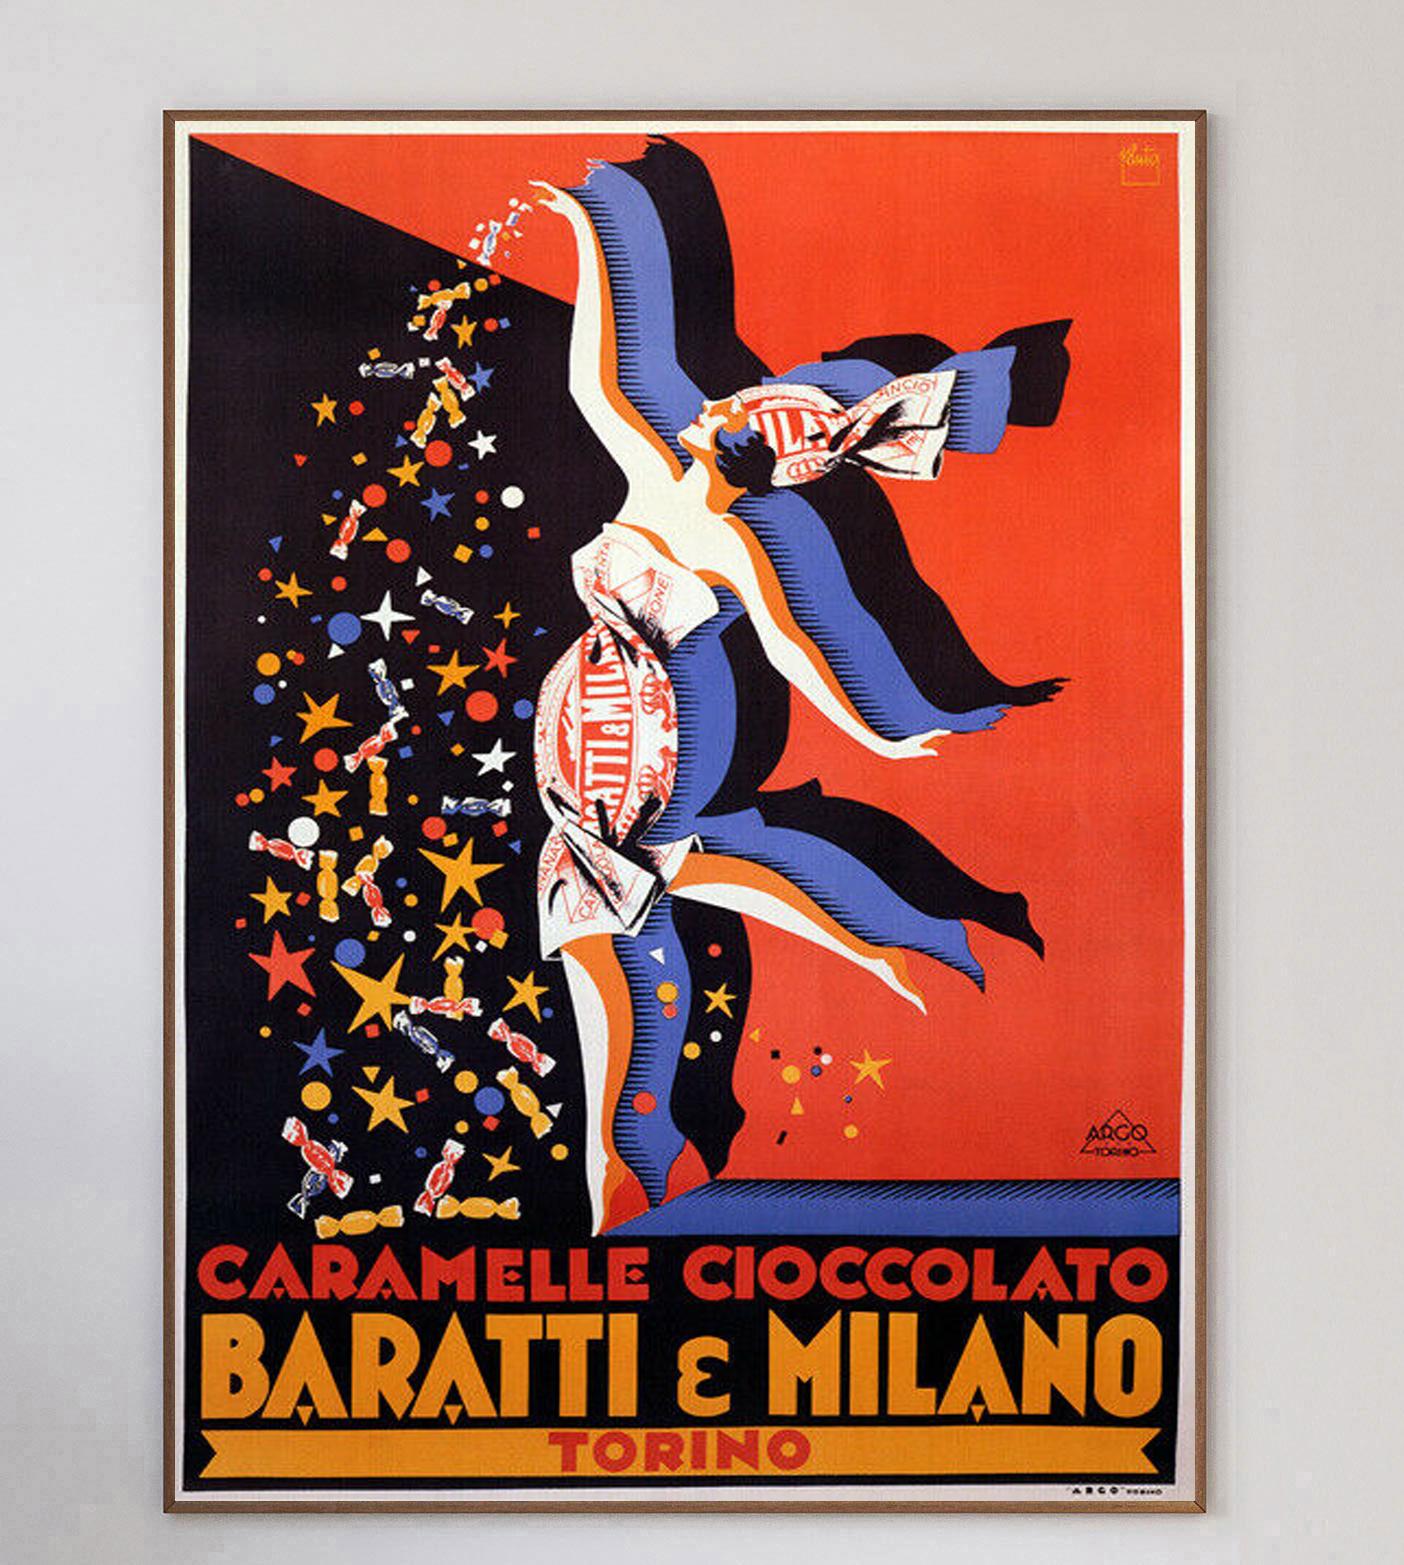 Devenu l'un des noms les plus connus de la confiserie italienne, Baratti e Milano a été fondé en 1858 lorsqu'il a ouvert son premier magasin à Turin (Torino).

Ce magnifique motif art déco représentant une femme qui s'asperge de confiseries a été